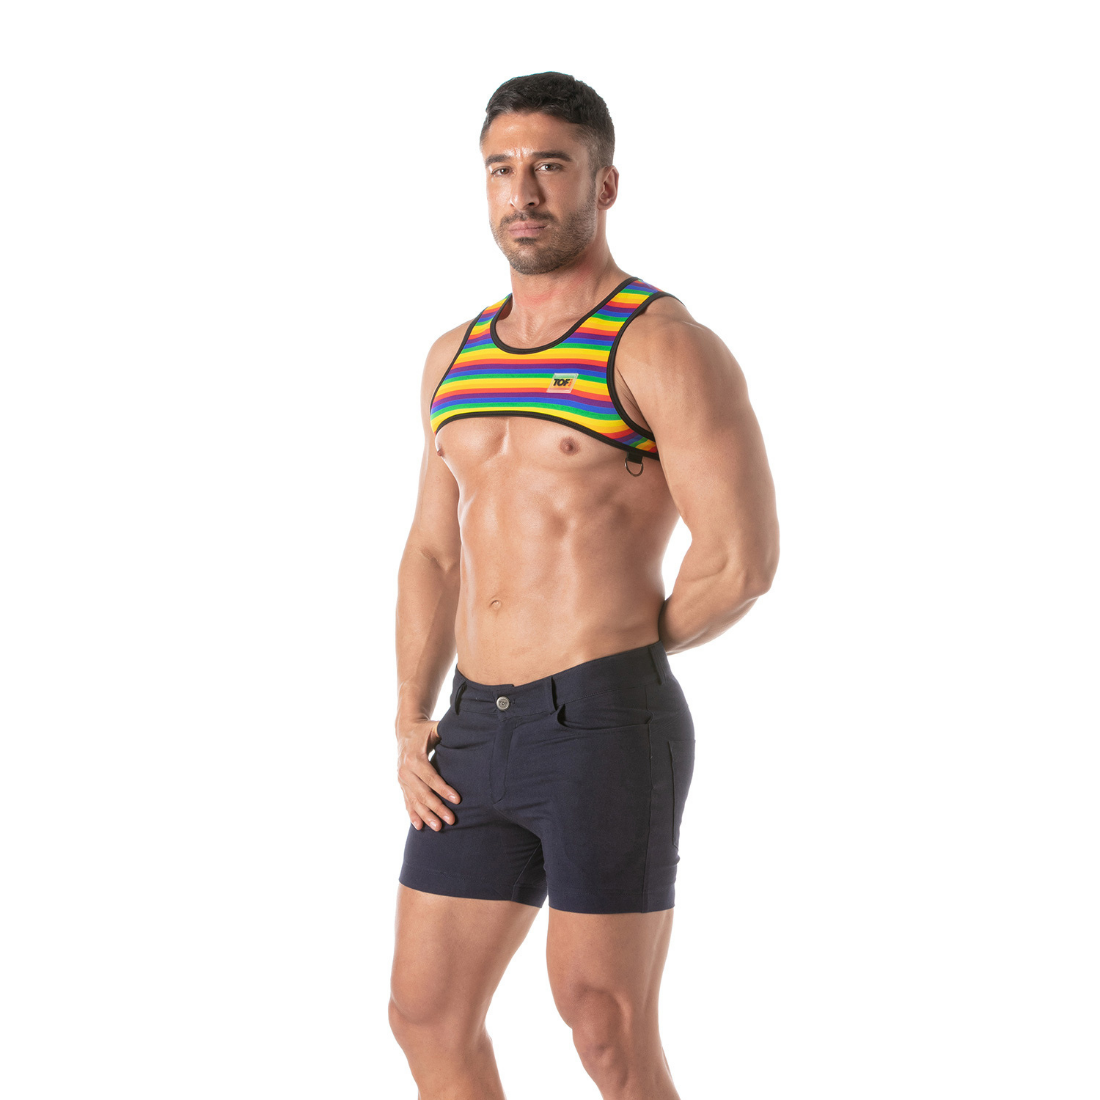 Rainbow Harness van TOF Paris, ontworpen voor gay mannen en te koop bij Flavourez.